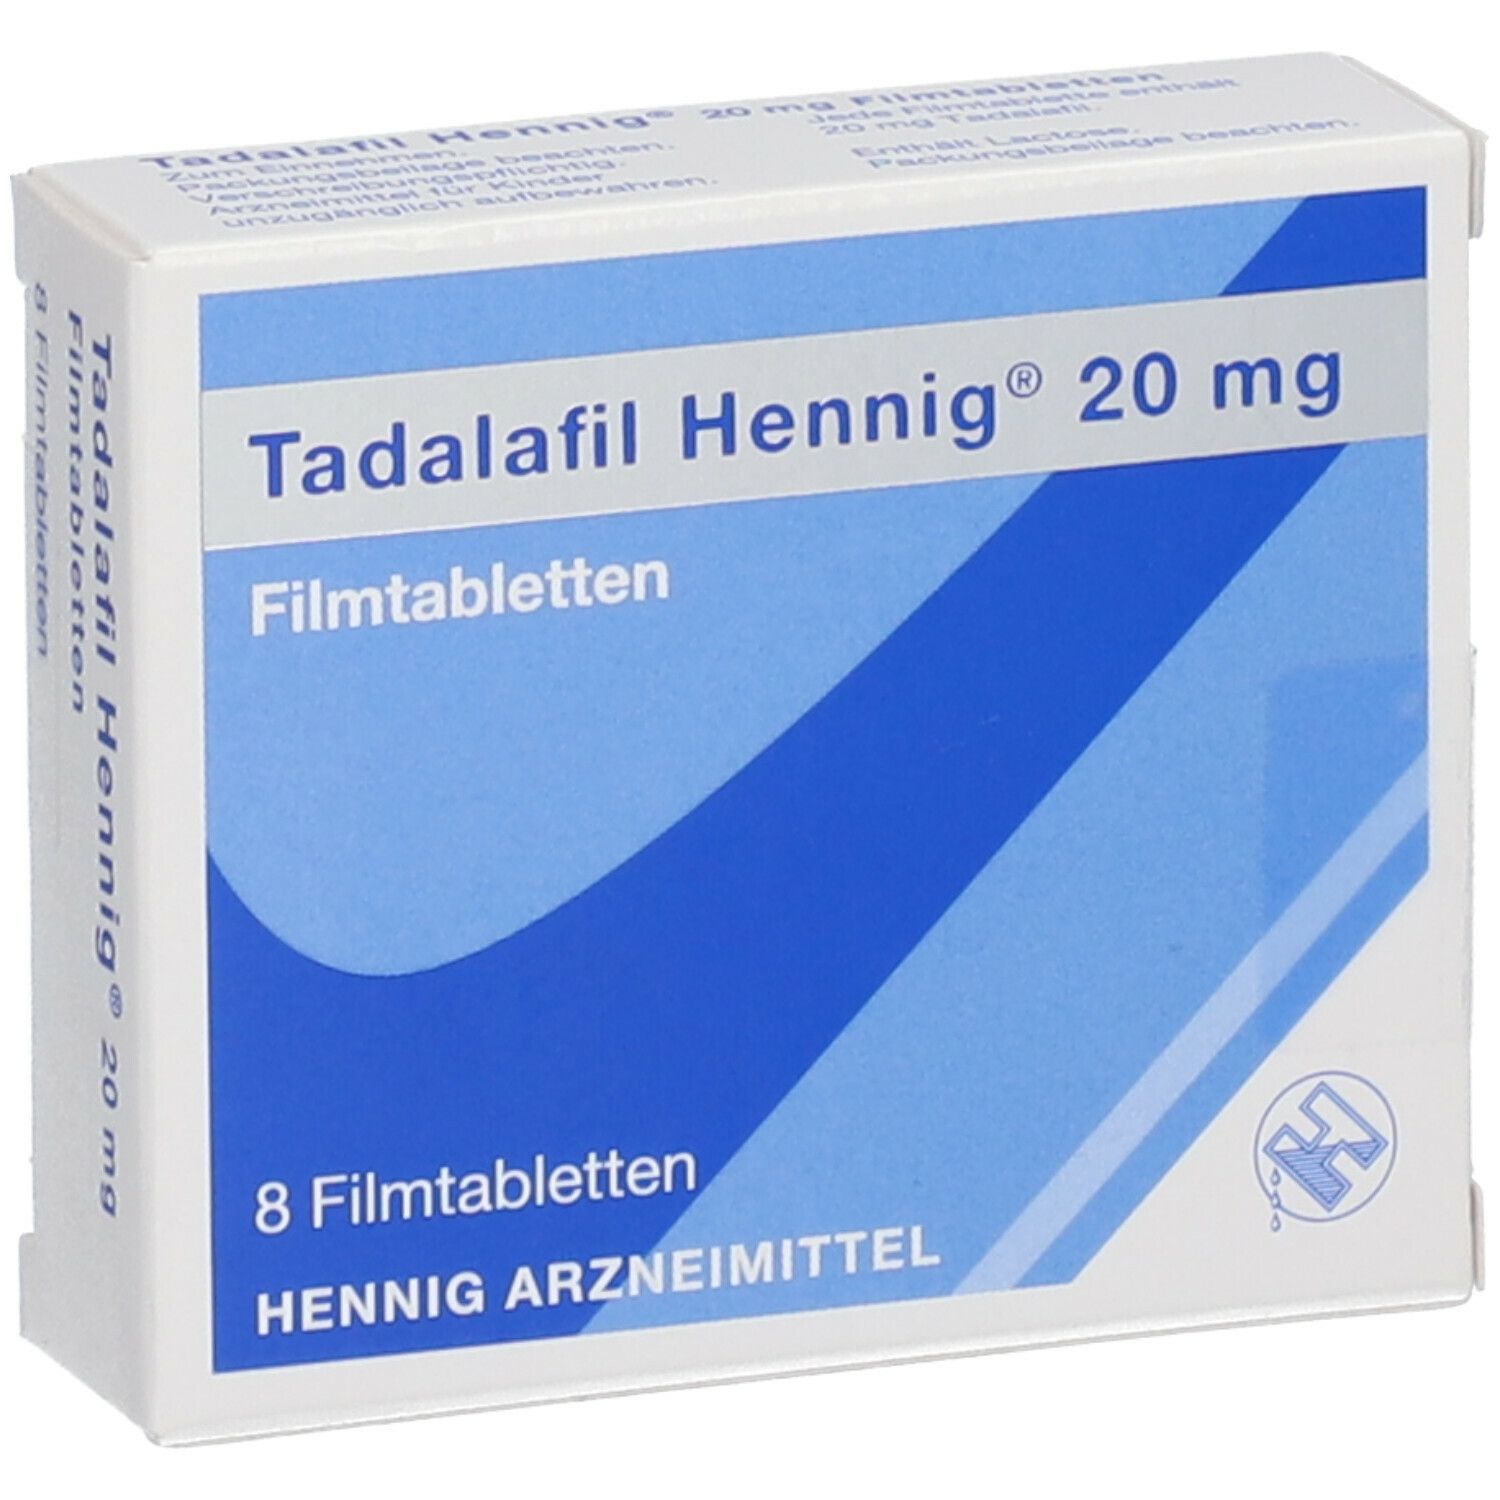 Tadalafil Hennig® 20 mg